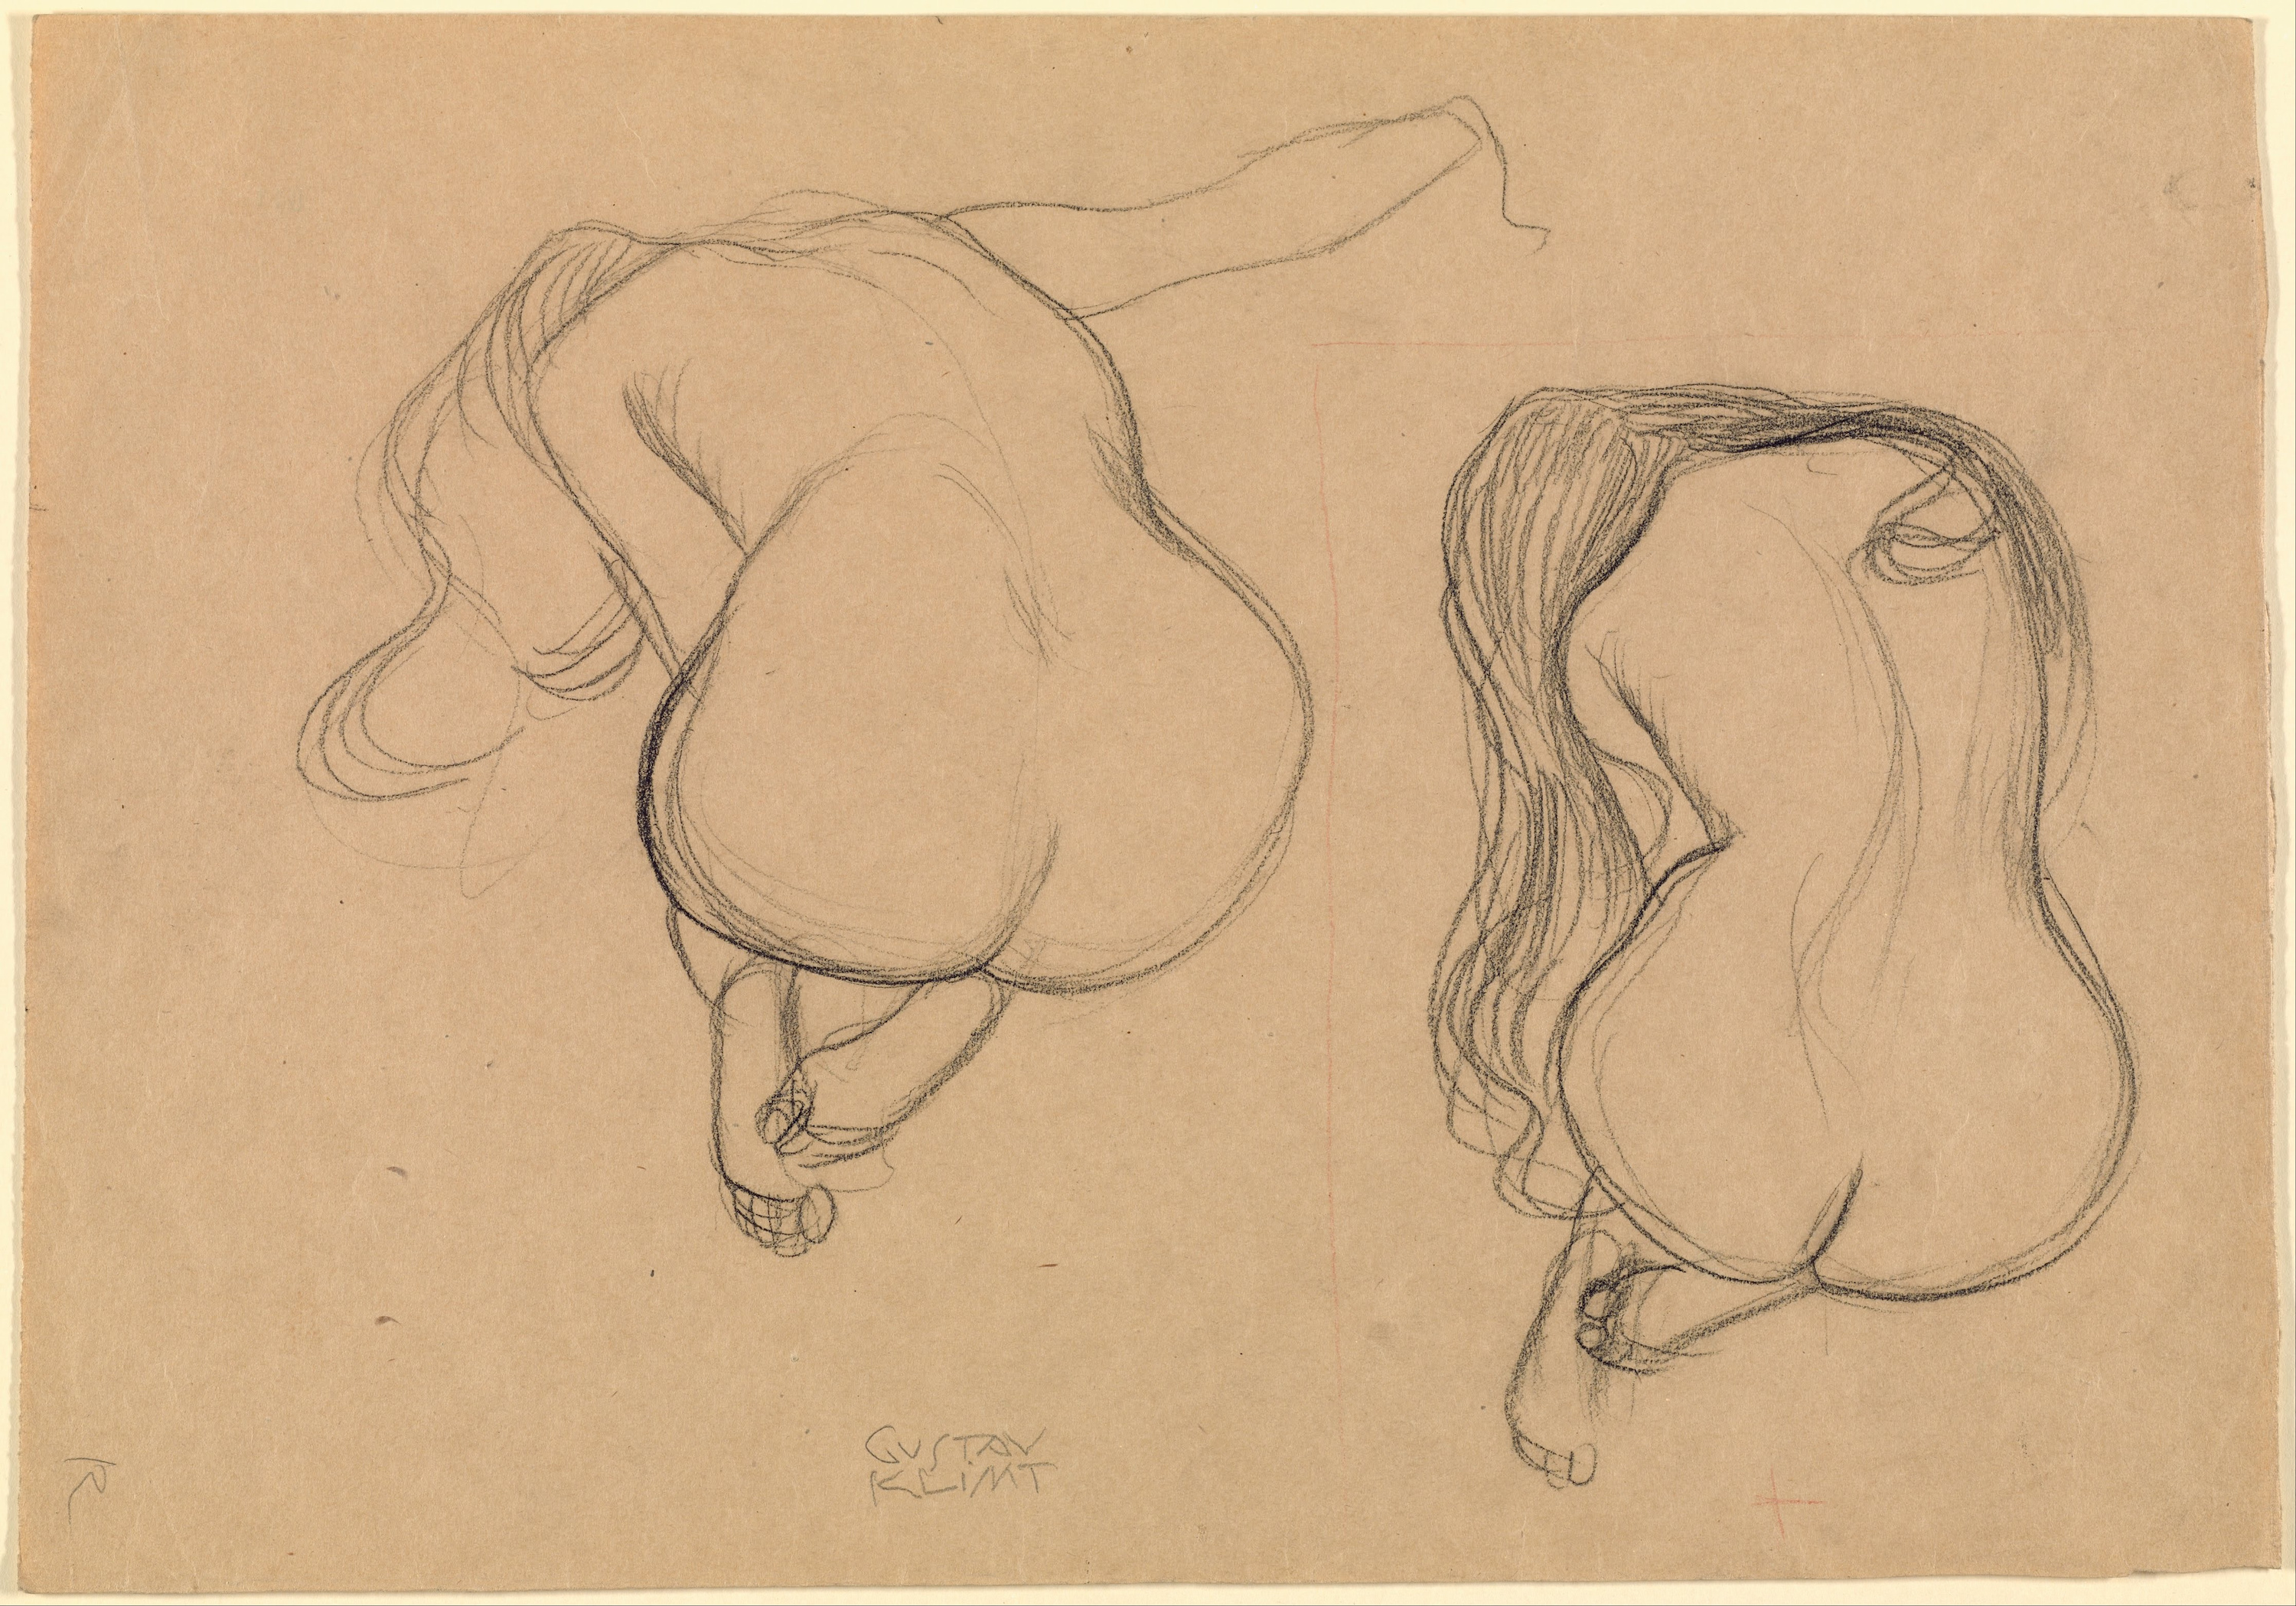 座る長い髪の裸婦の2つの習作 by グスタフ クリムト - 1901-02年 - 45.2 x 31.7 cm 